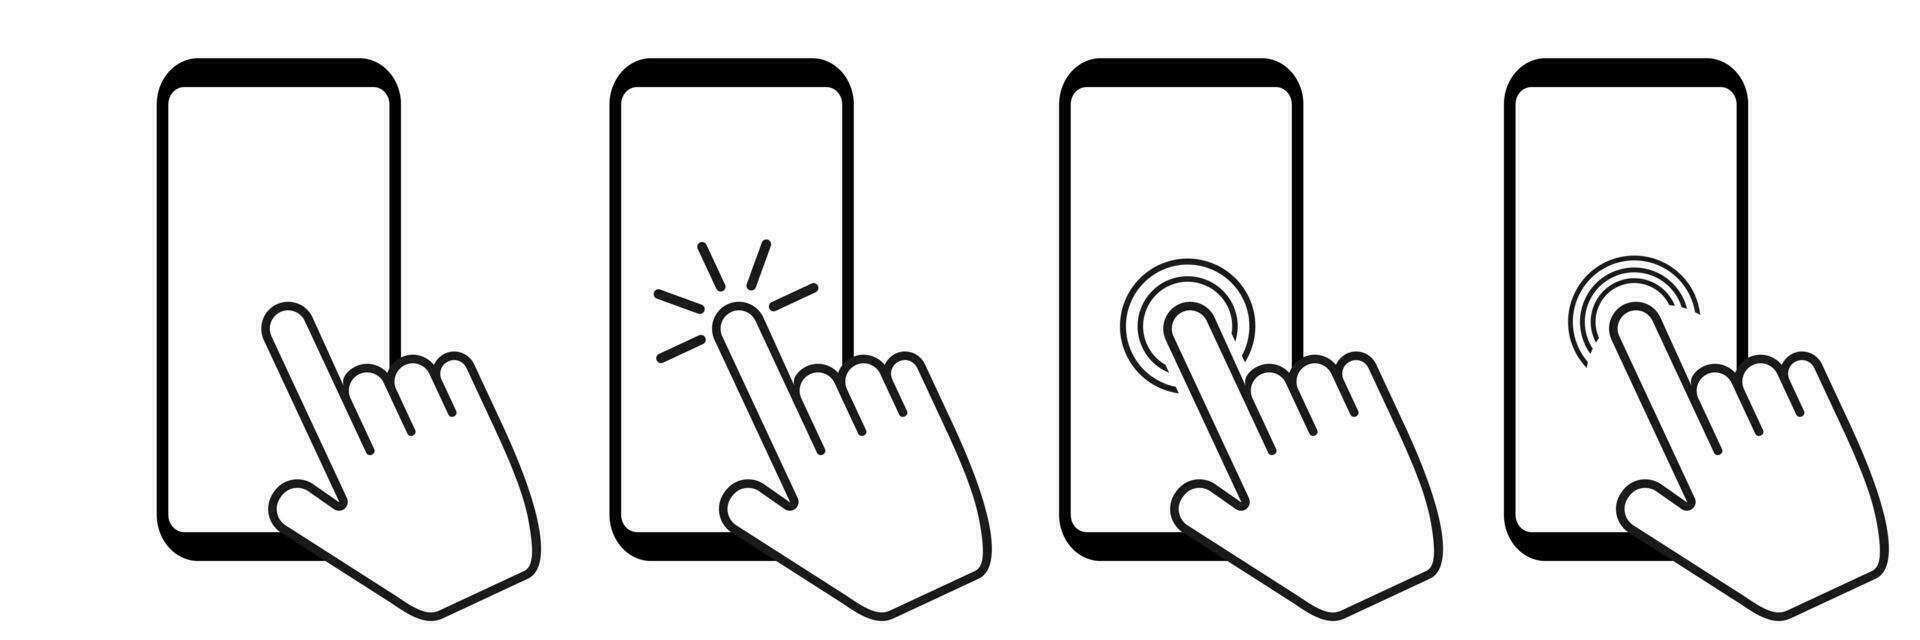 Smartphone Bildschirm mit Klicken Finger. berühren Anzeige mit Hand auf Weiß Hintergrund. isoliert Handy, Mobiltelefon Gerät mit Zapfhahn Symbol. Wahl Mauszeiger Piktogramm Sammlung. Vektor Satz. eps 10.